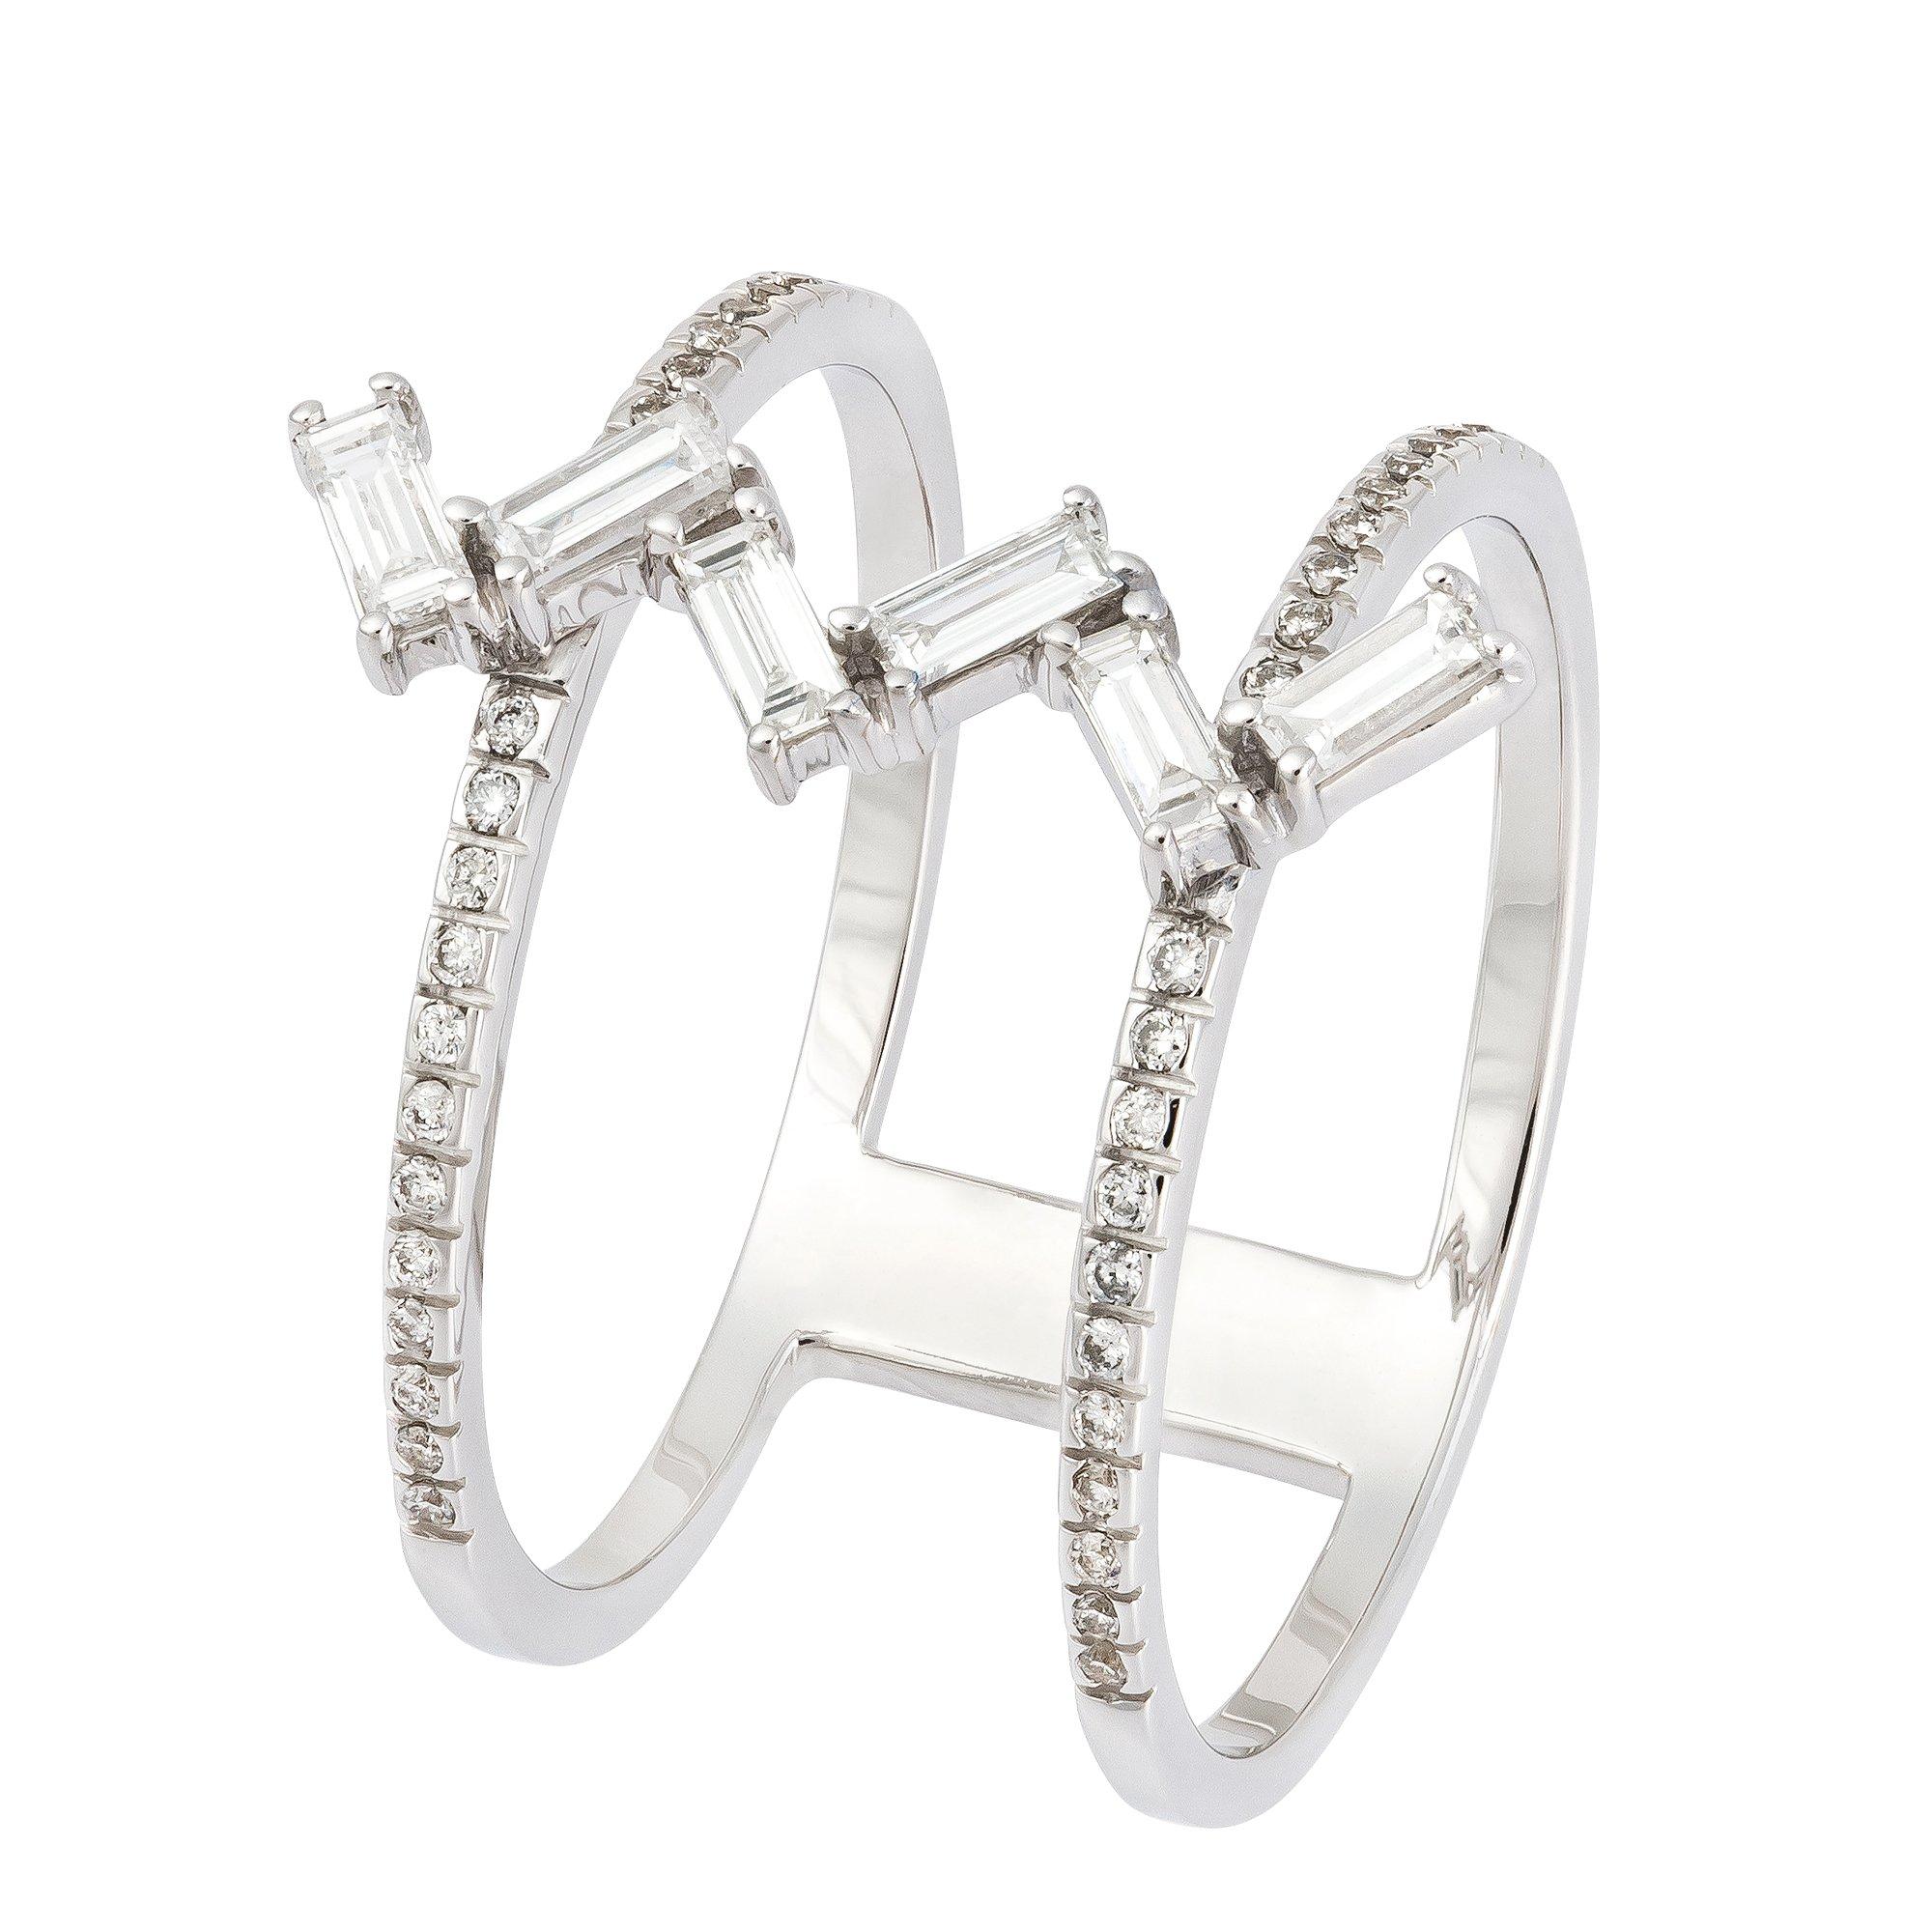 Baguette Diamond Fashion Diamond RING 18K White Gold 0.13 Cts/42 Pcs; 0.24 Cts/6 Pcs